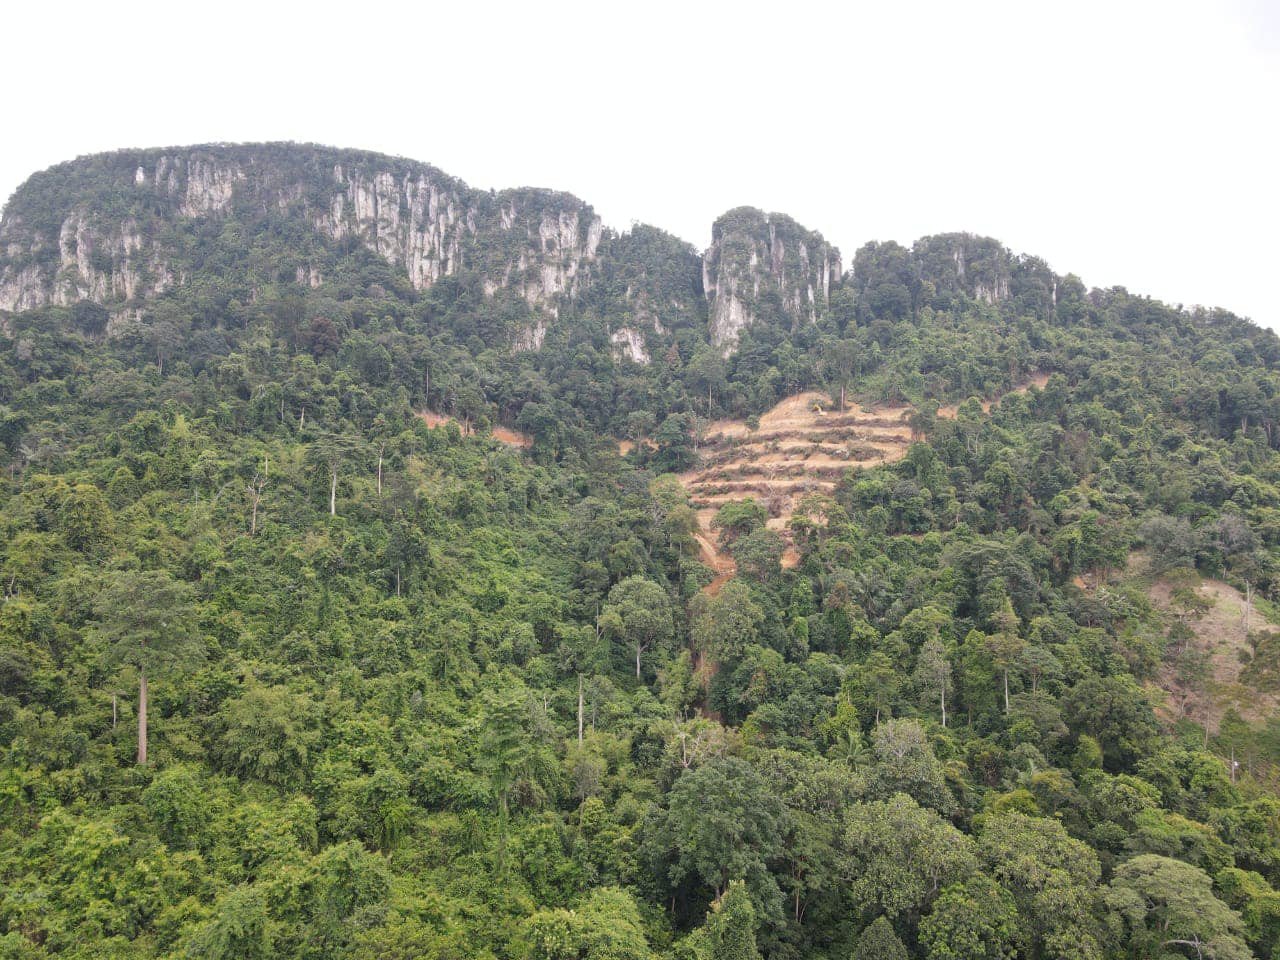 Keadaan di atas puncak Bukit Tabur yang menunjukkan kerja-kerja pembersihan hutan dijalankan hingga mencetuskan kemarahan orang ramai. - Gambar dari Facebook Peka